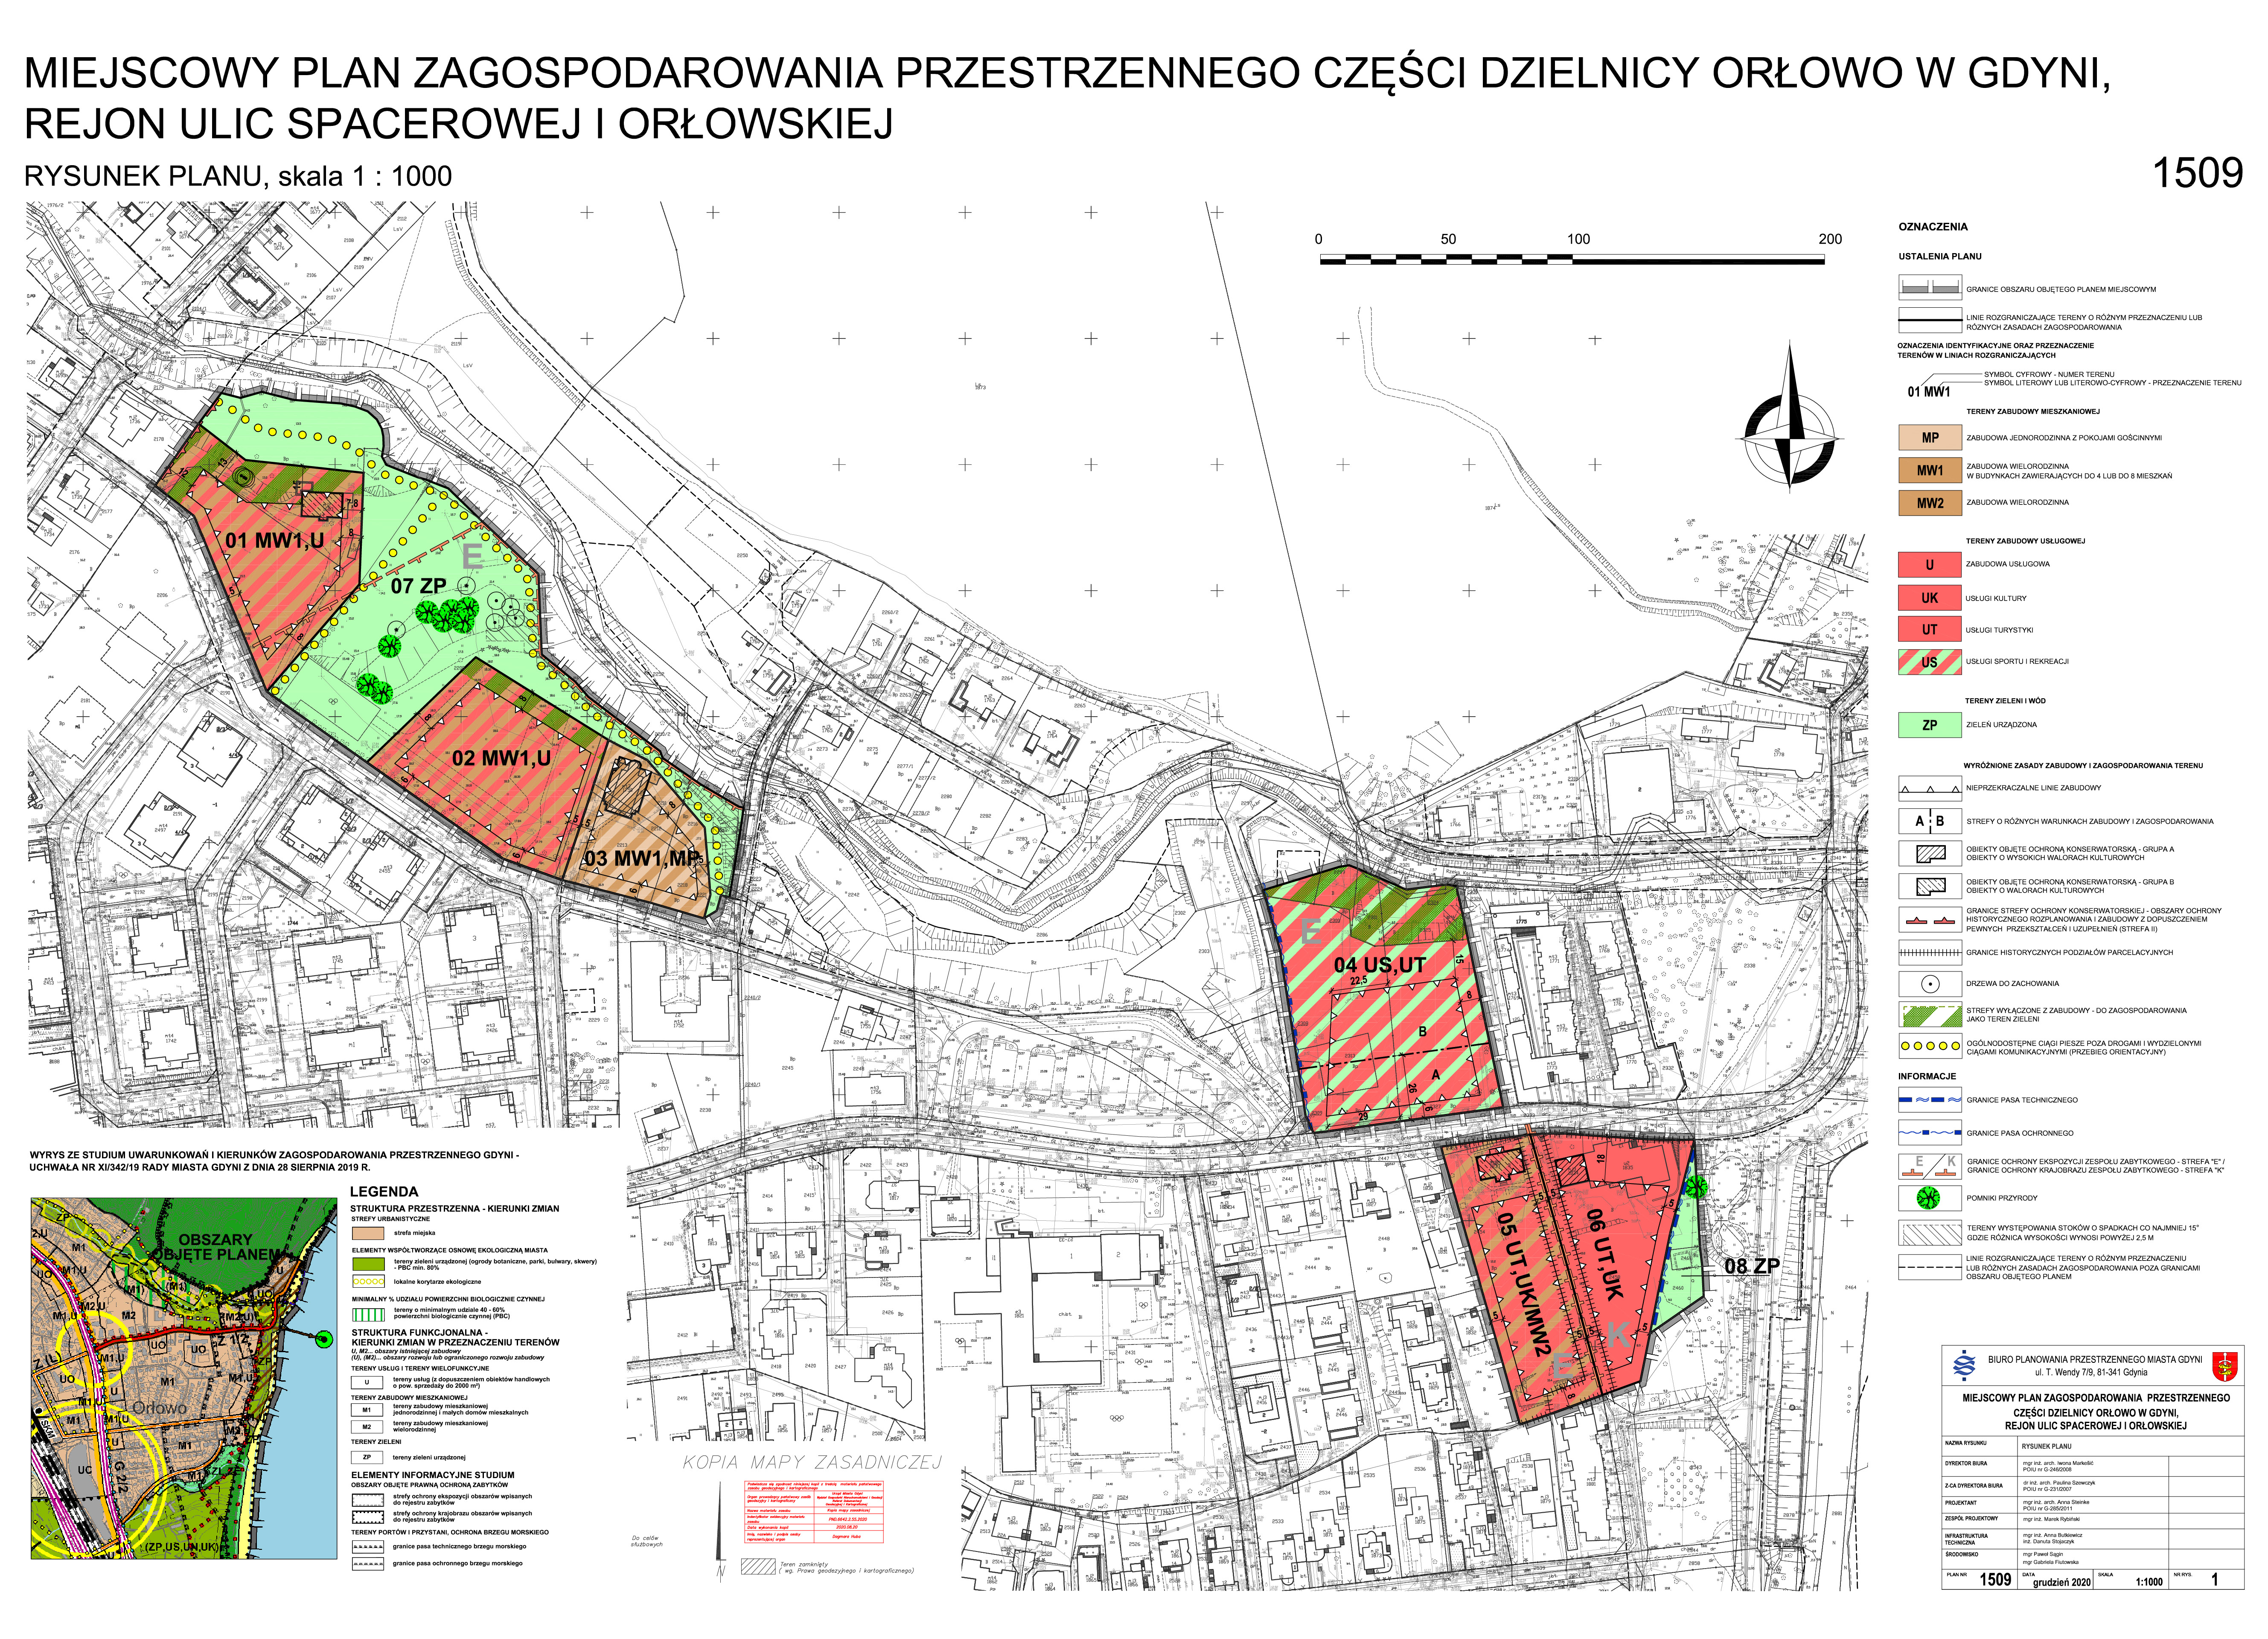 Pierwszy projekt miejscowego planu zagospodarowania przestrzennego części dzielnicy Orłowo obejmuje rejon ulic Spacerowej i Orłowskiej.